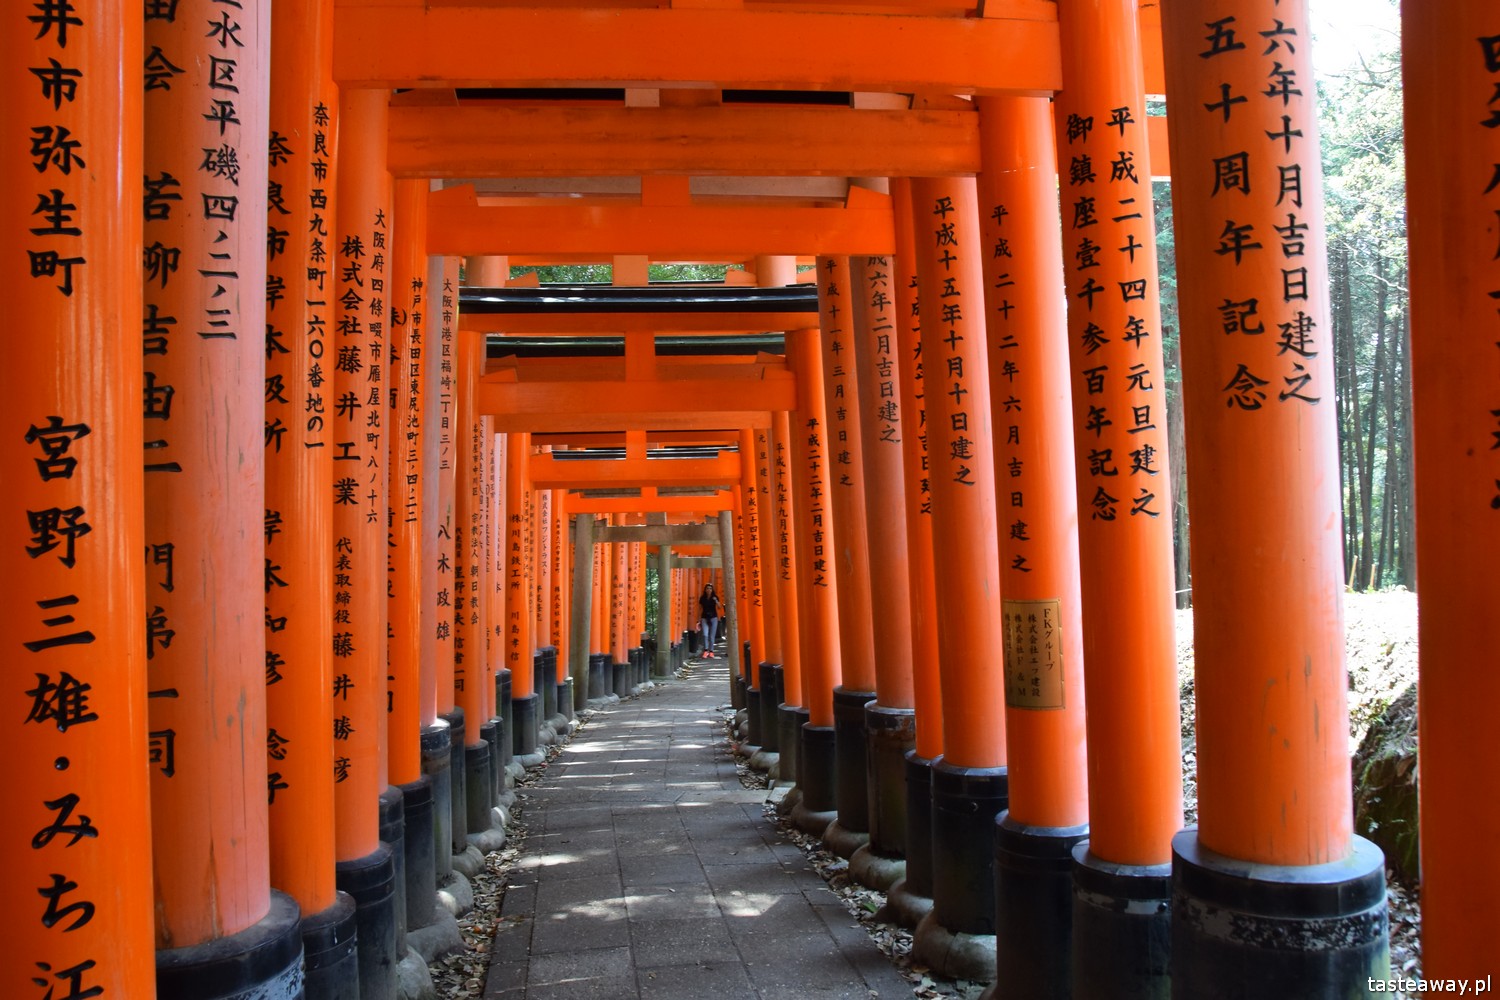 Japonia, co zobaczyć w Japonii, najpiękniejsze miejsca w Japonii, Kioto, Japonia w 2 tygodnie, co zobaczyć w Kioto, Fushimi Inari